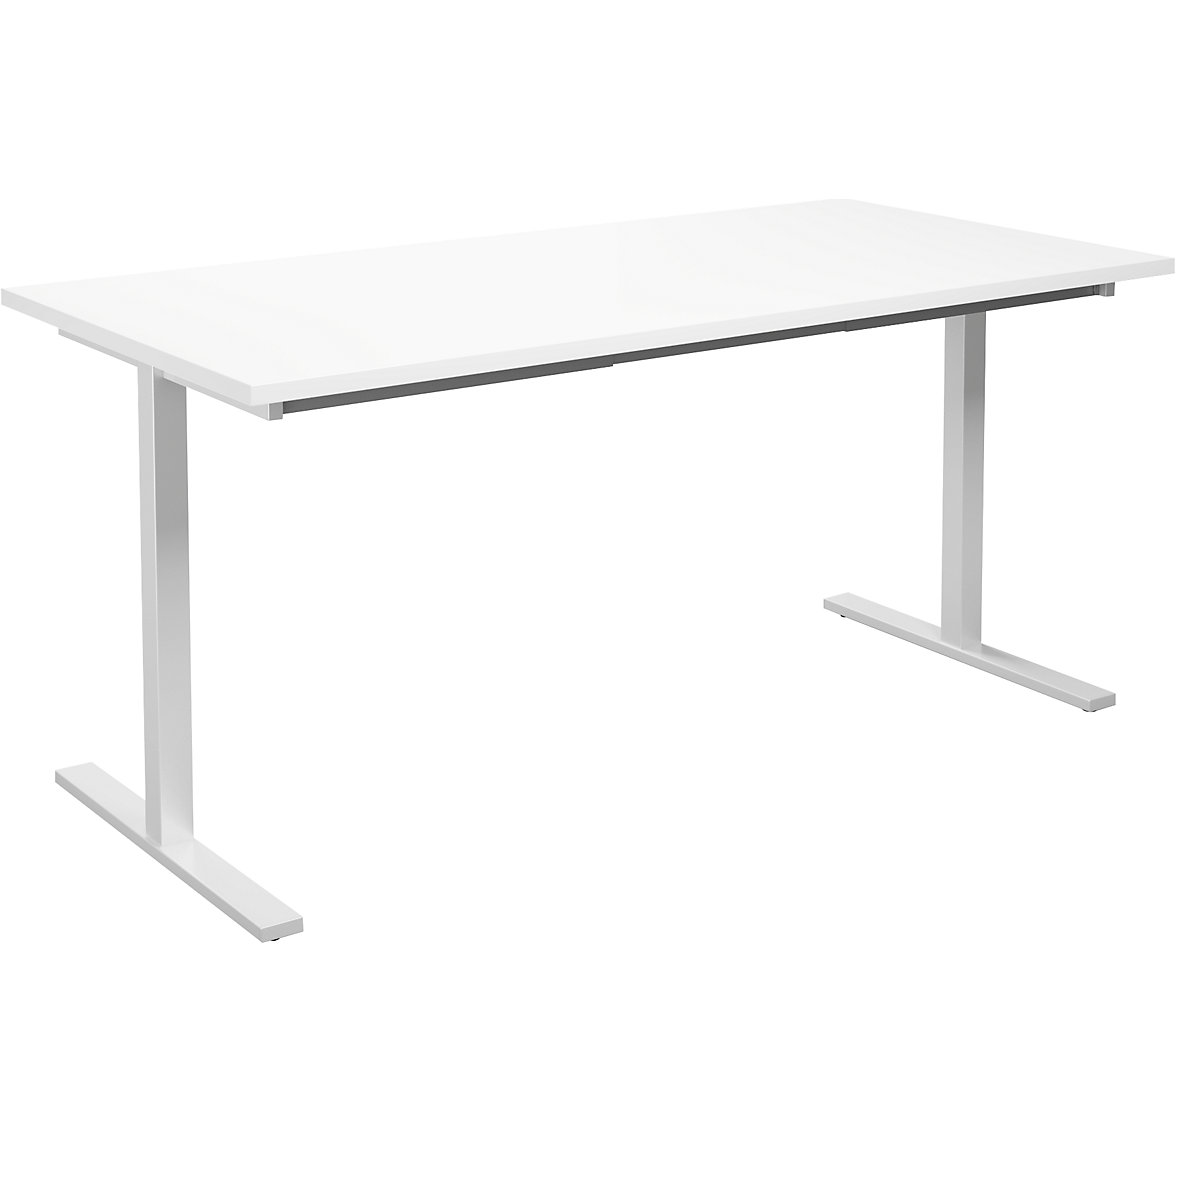 DUO-T multi-purpose desk, straight tabletop, WxD 1600 x 800 mm, white, white-15